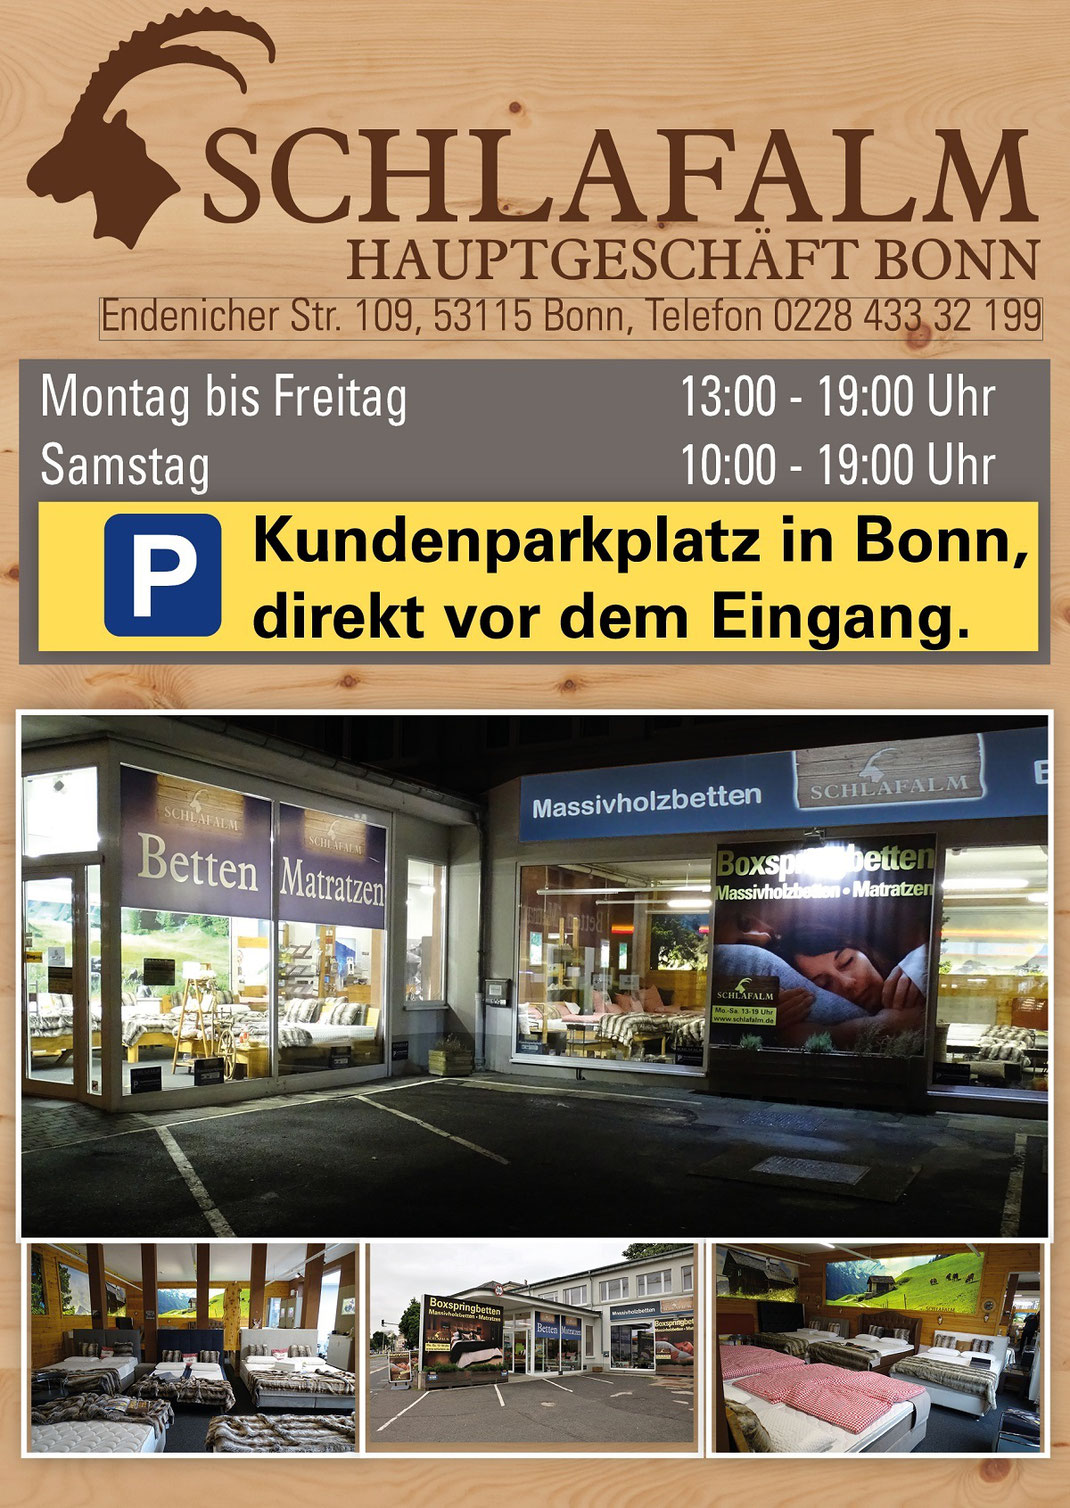 Ein Bild für Kunden aus Bad Neuenahr, das Text, Matratzen, Taschenfederkernmatratzen, Kaltschaummatratzen, extra feste Matratzen enthält.